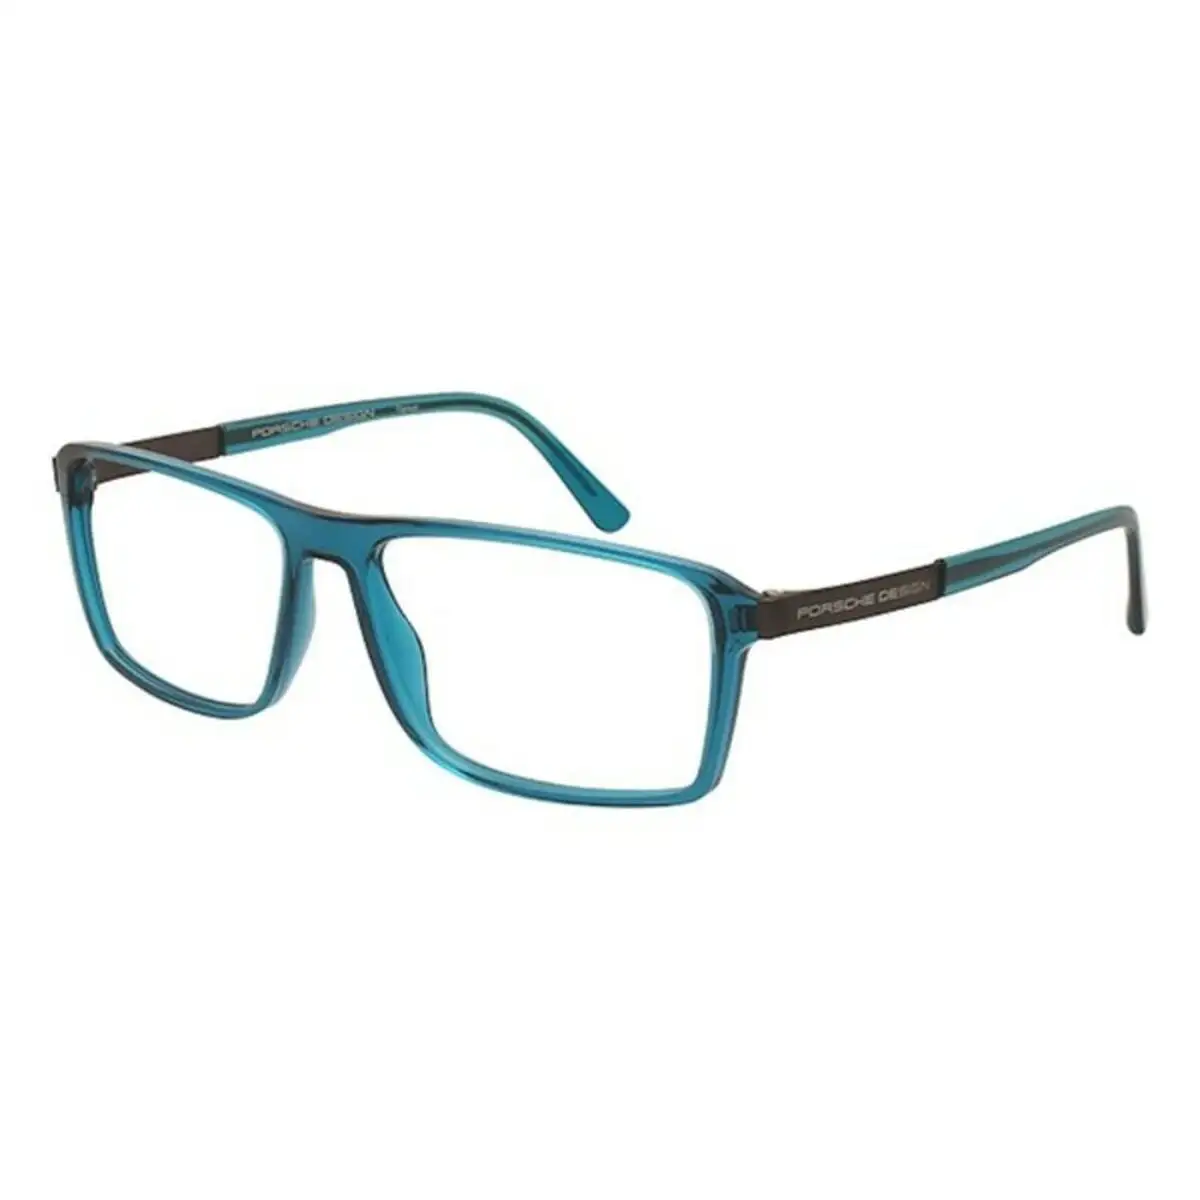 Monture de lunettes homme porsche p8259 d vert o 57 mm _7169. DIAYTAR SENEGAL - Où Choisir Devient une Découverte. Explorez notre boutique en ligne et trouvez des articles qui vous surprennent et vous ravissent à chaque clic.